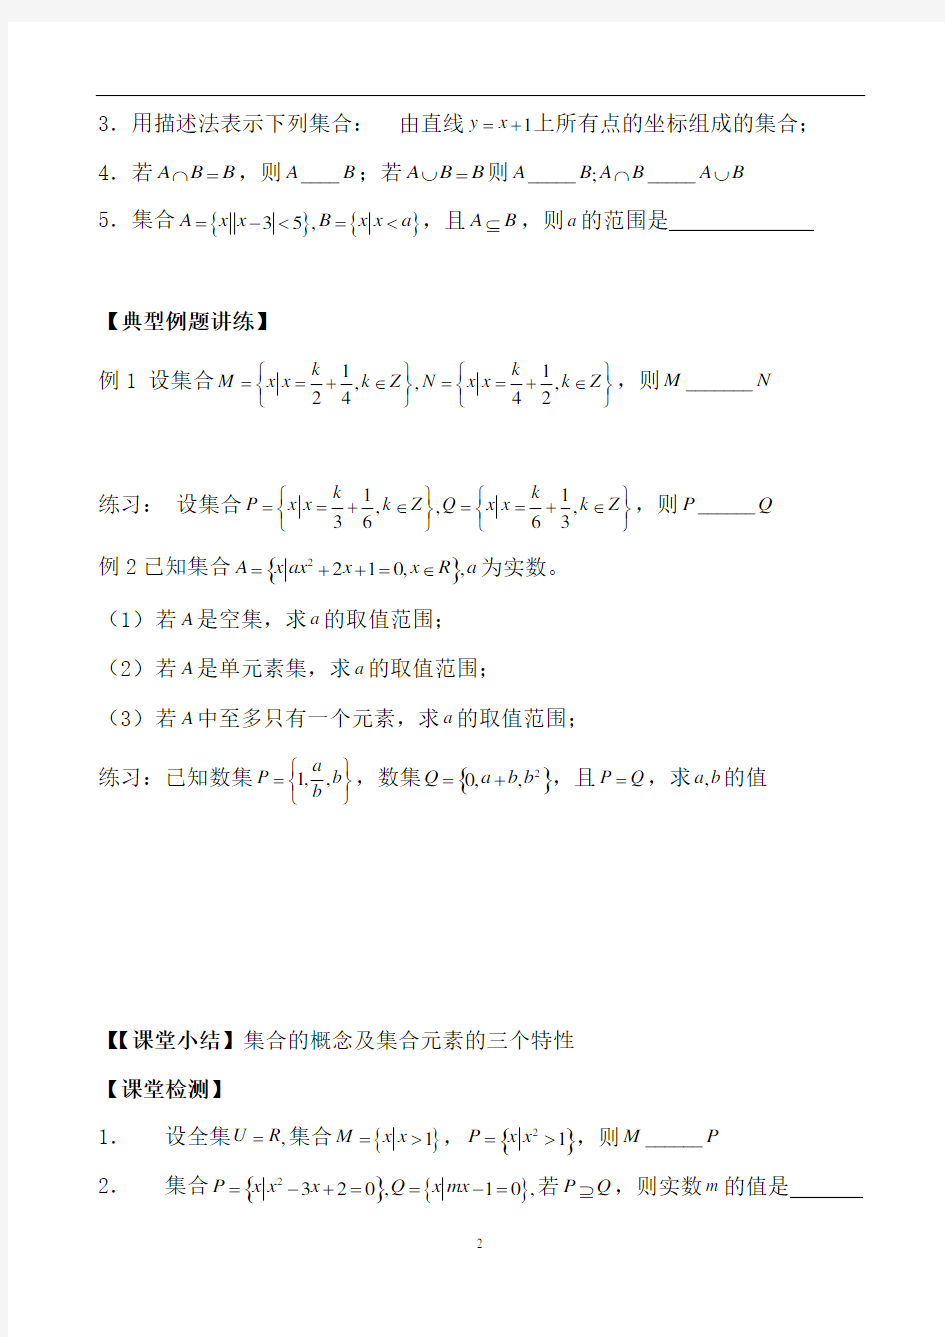 2019年高考数学艺术生专用复习讲义(完整版)